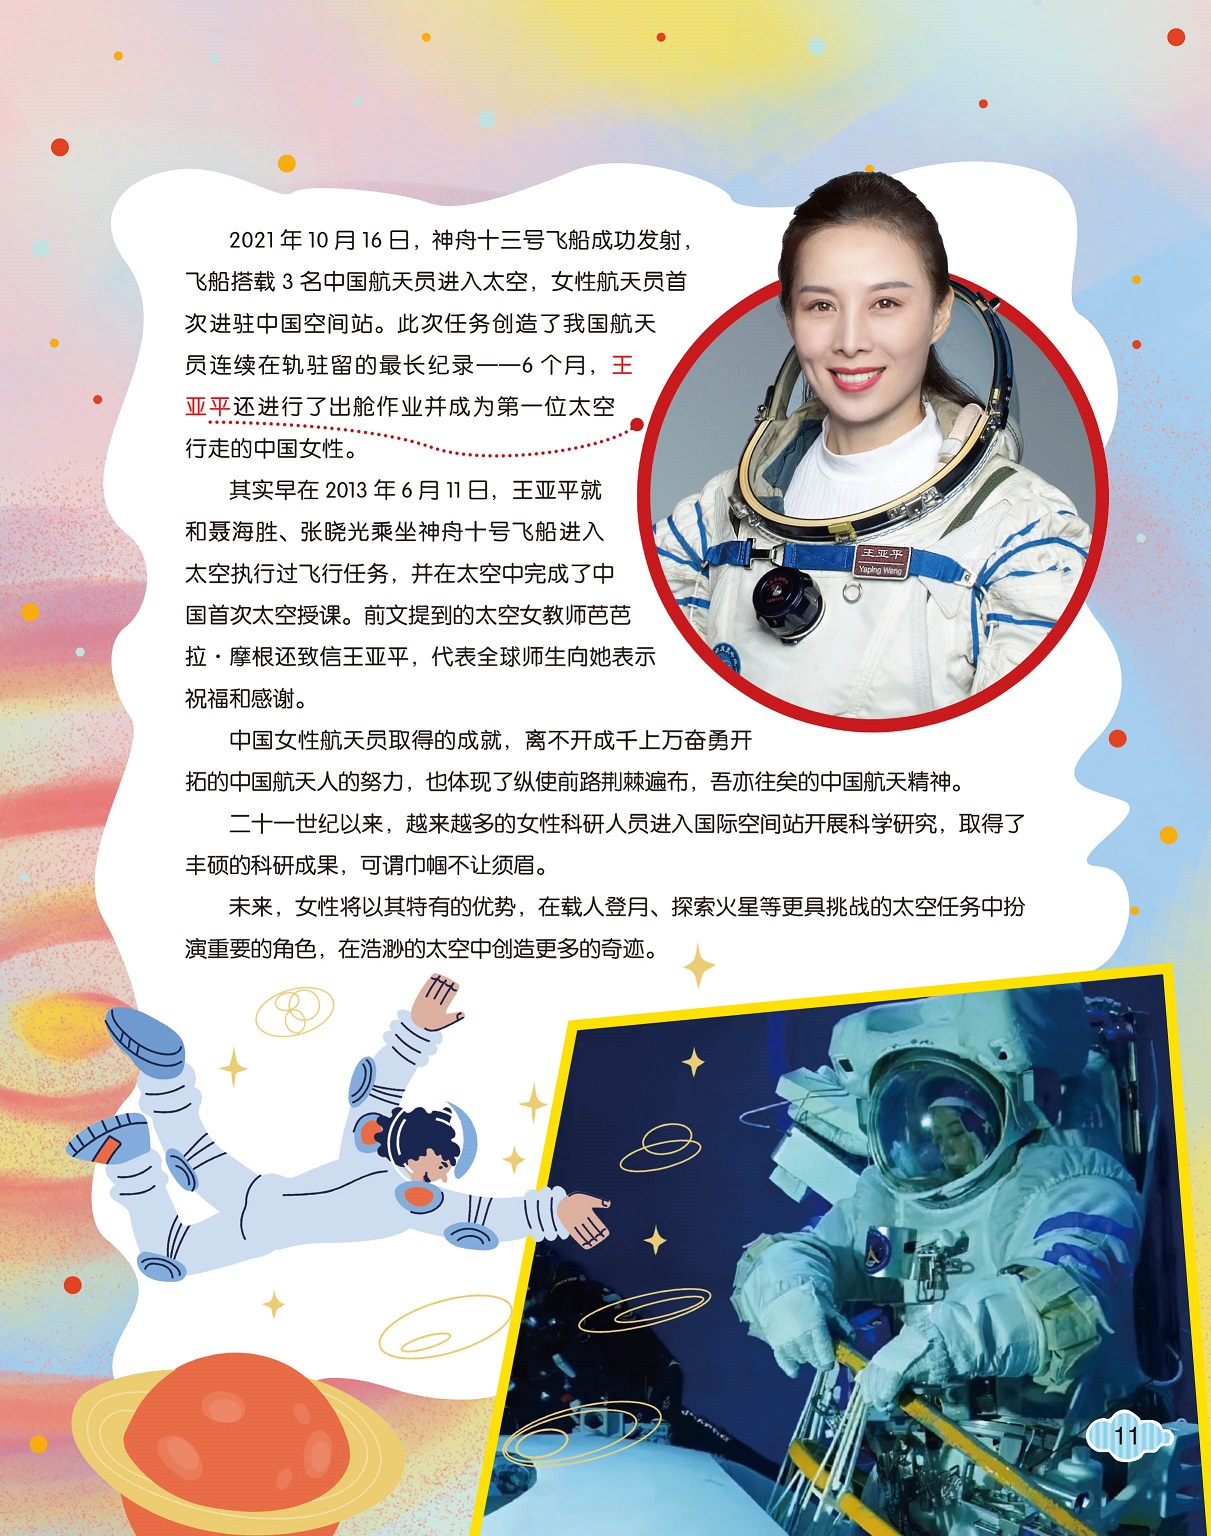 王亚平成为第一位太空行走的中国女性,女性在探索太空扮演重要角色